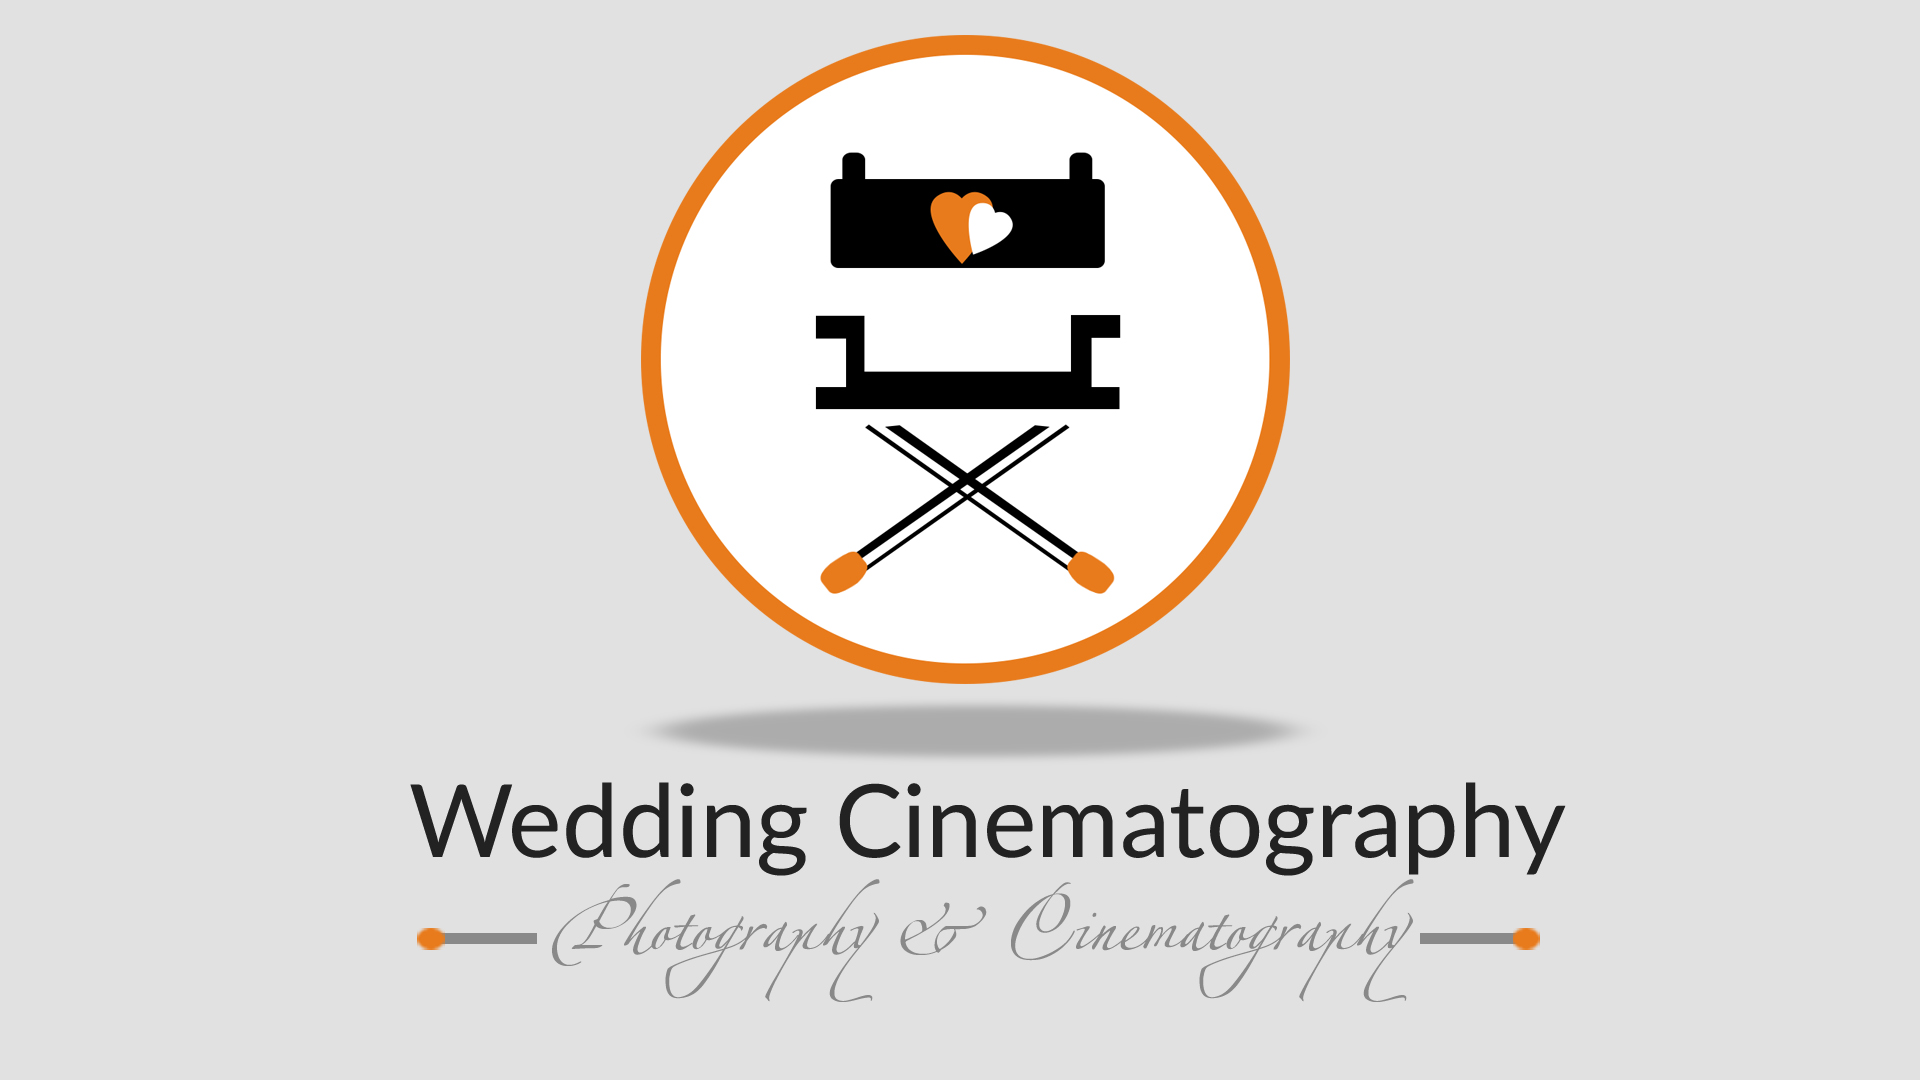 weddingcinematography photography wedding cinematography logo designing in chennai